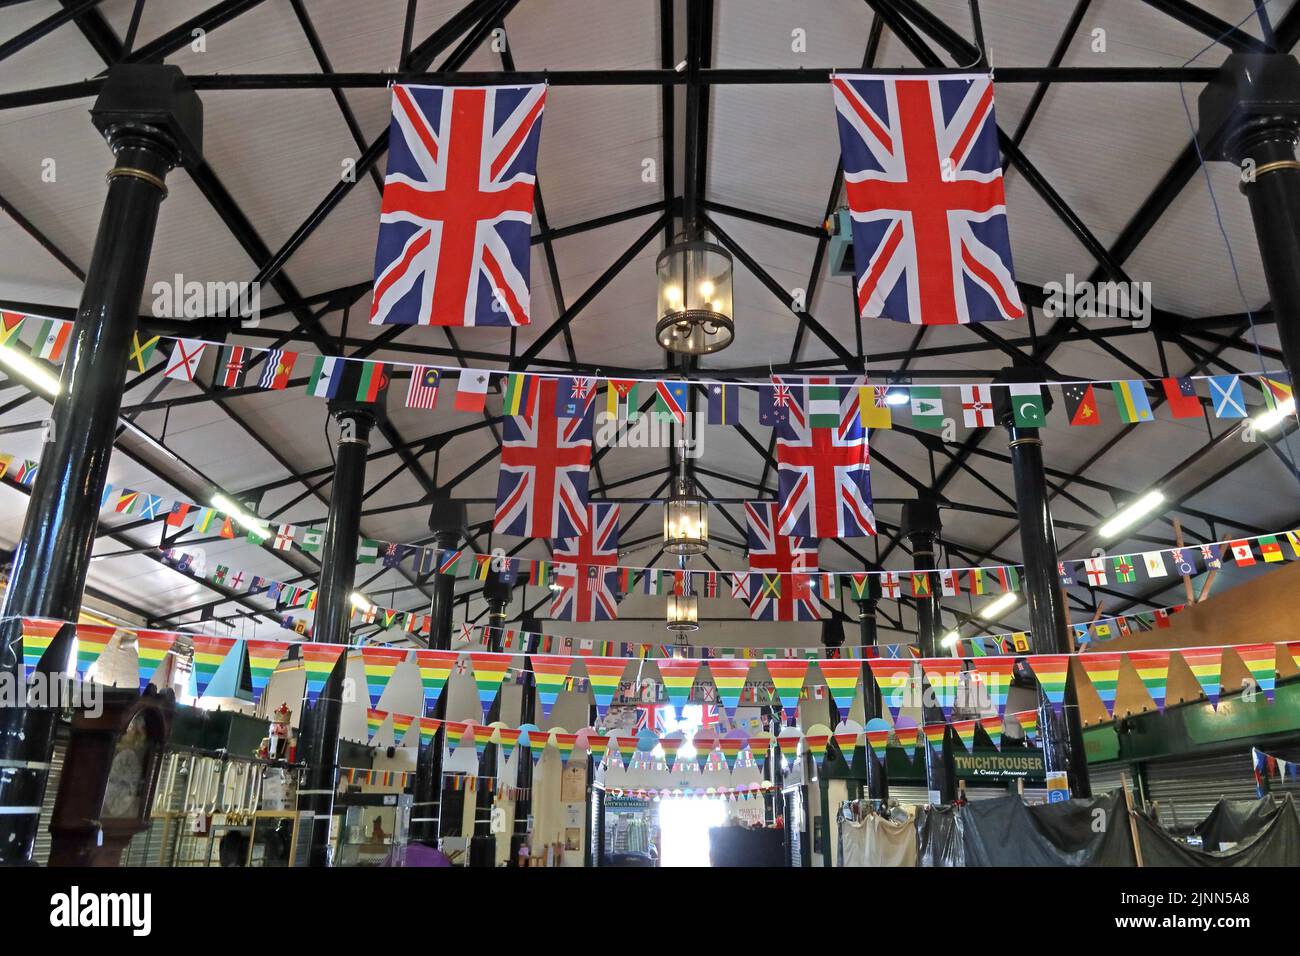 Innenseite des Nantwich Market, Market Street, Nantwich, Cheshire, England, UK, CW5 5DG, Flaggen für die Königinnen Jubiläum 2022 Stockfoto